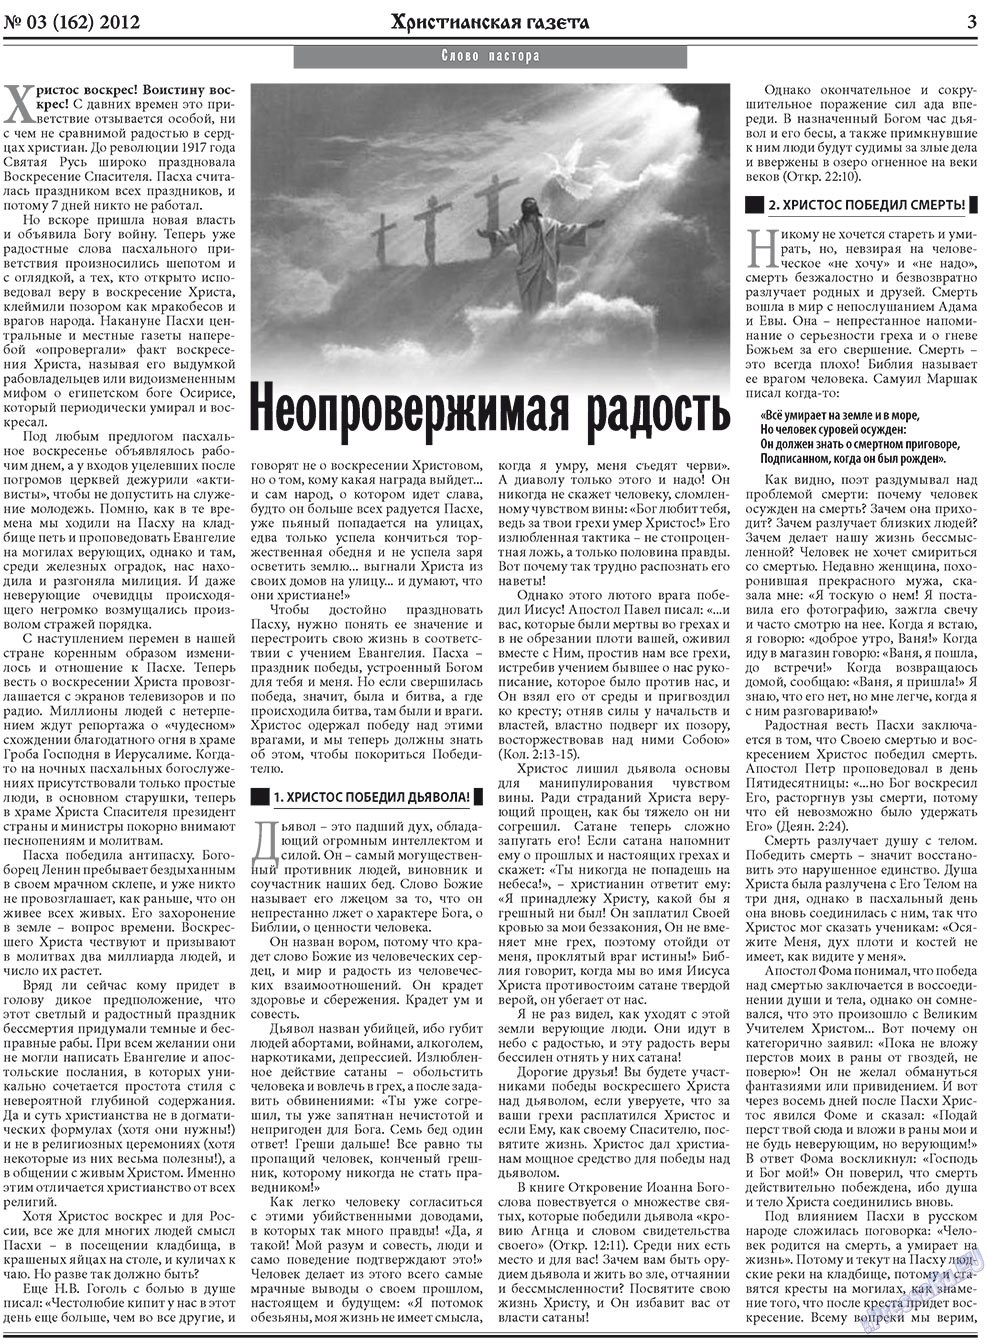 Христианская газета, газета. 2012 №3 стр.3